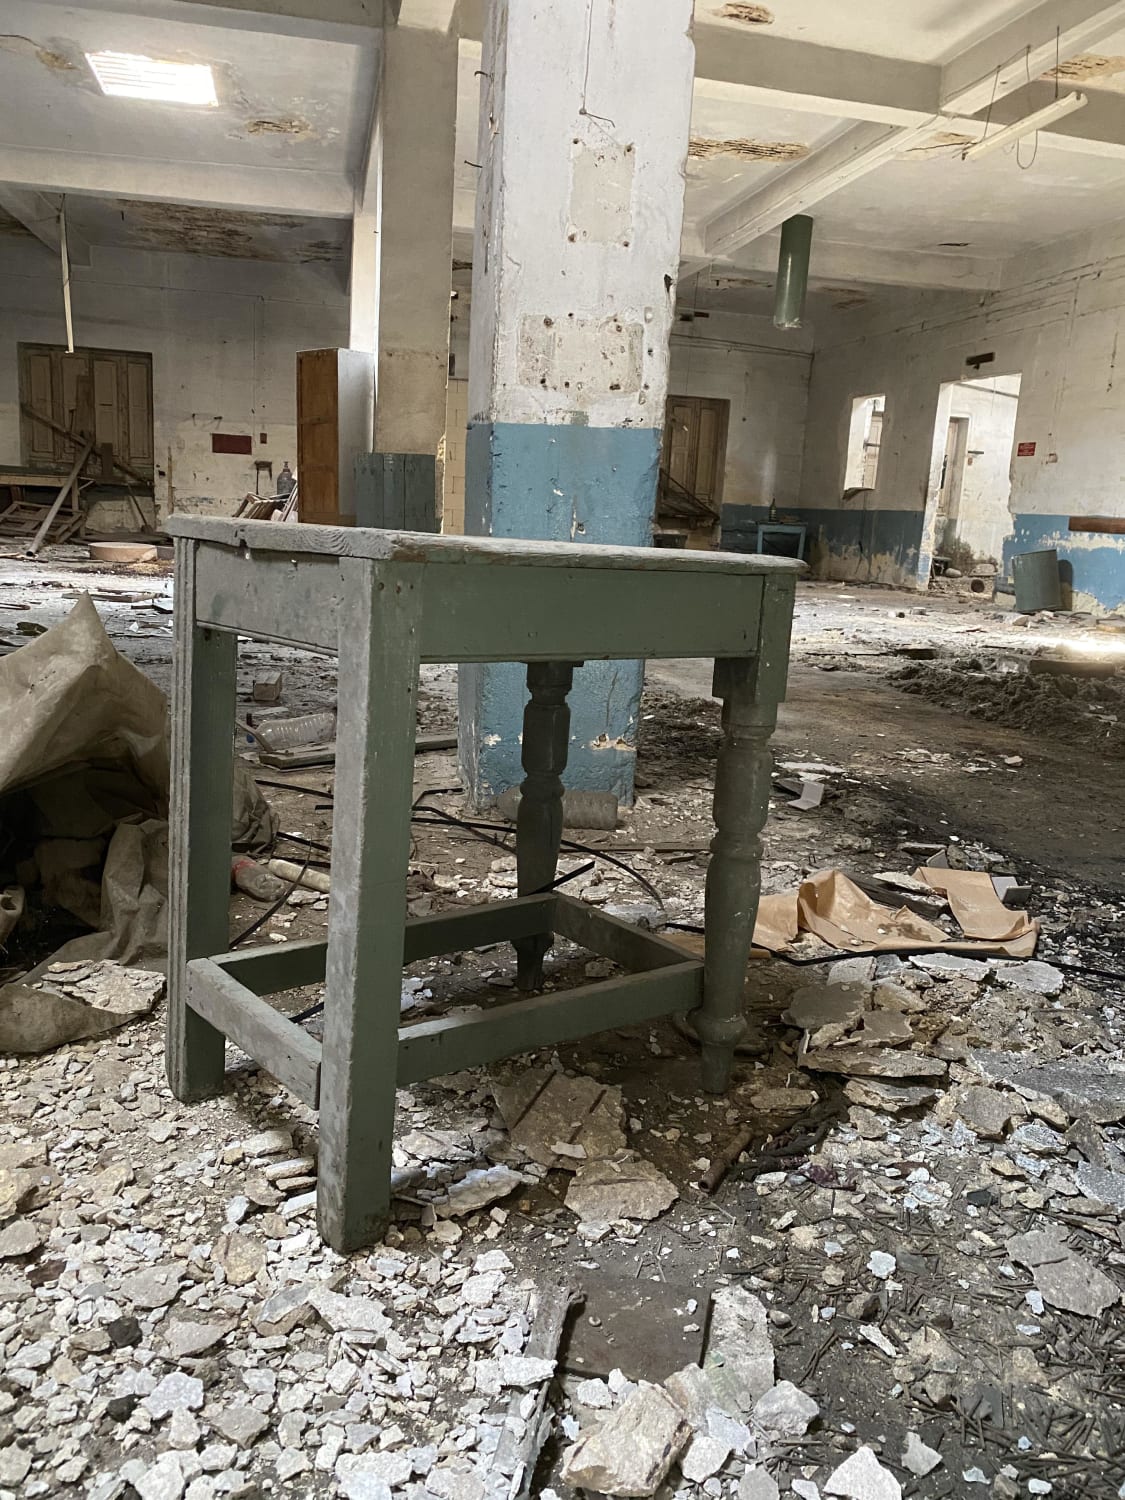 Abandoned match factory in Malta DM for more!! #forsakengems #instagram